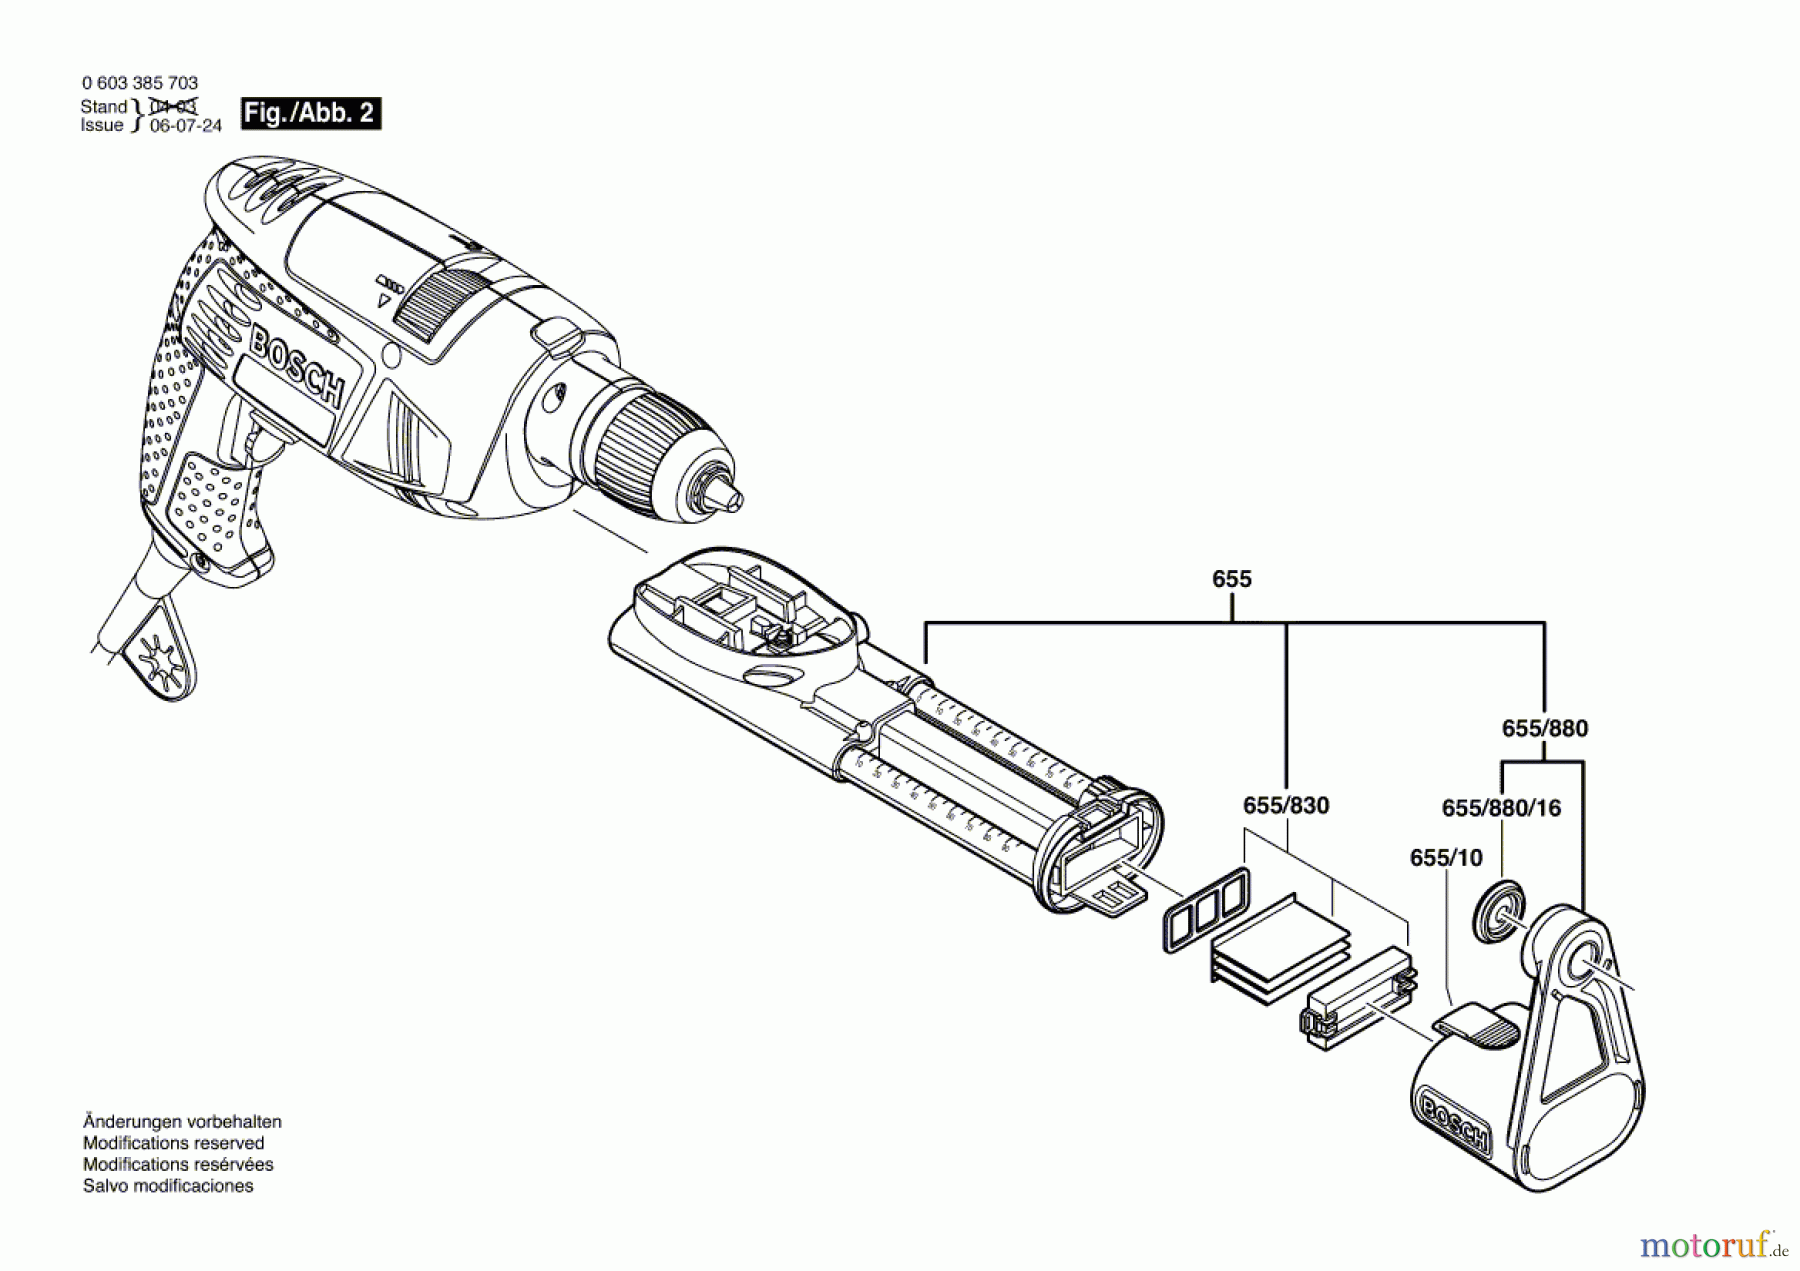  Bosch Werkzeug Schlagbohrmaschine PSB 650 RA Seite 2